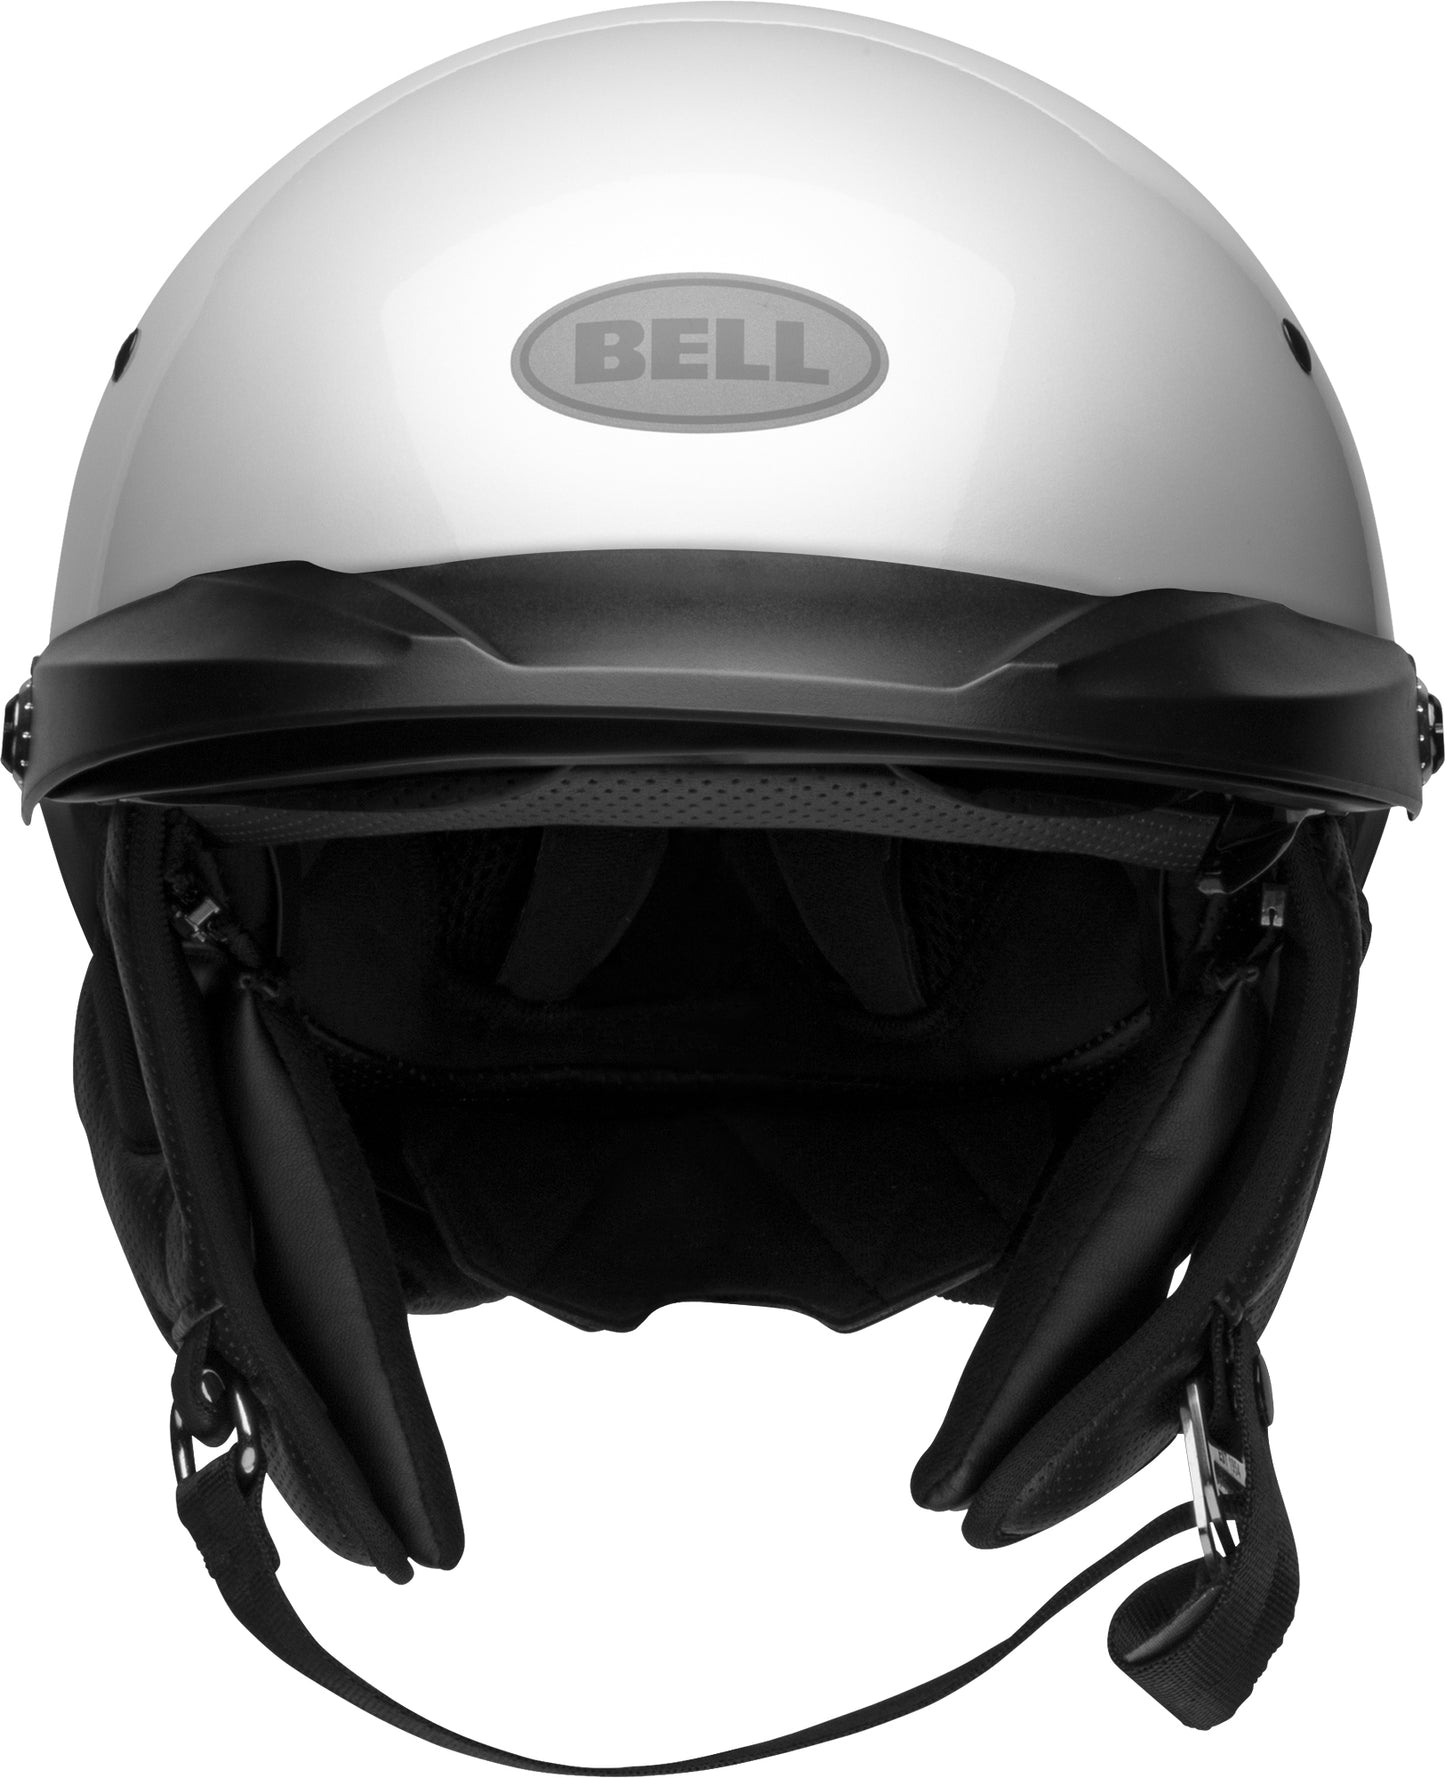 Bell Helmet Pit Boss (Pearl White)